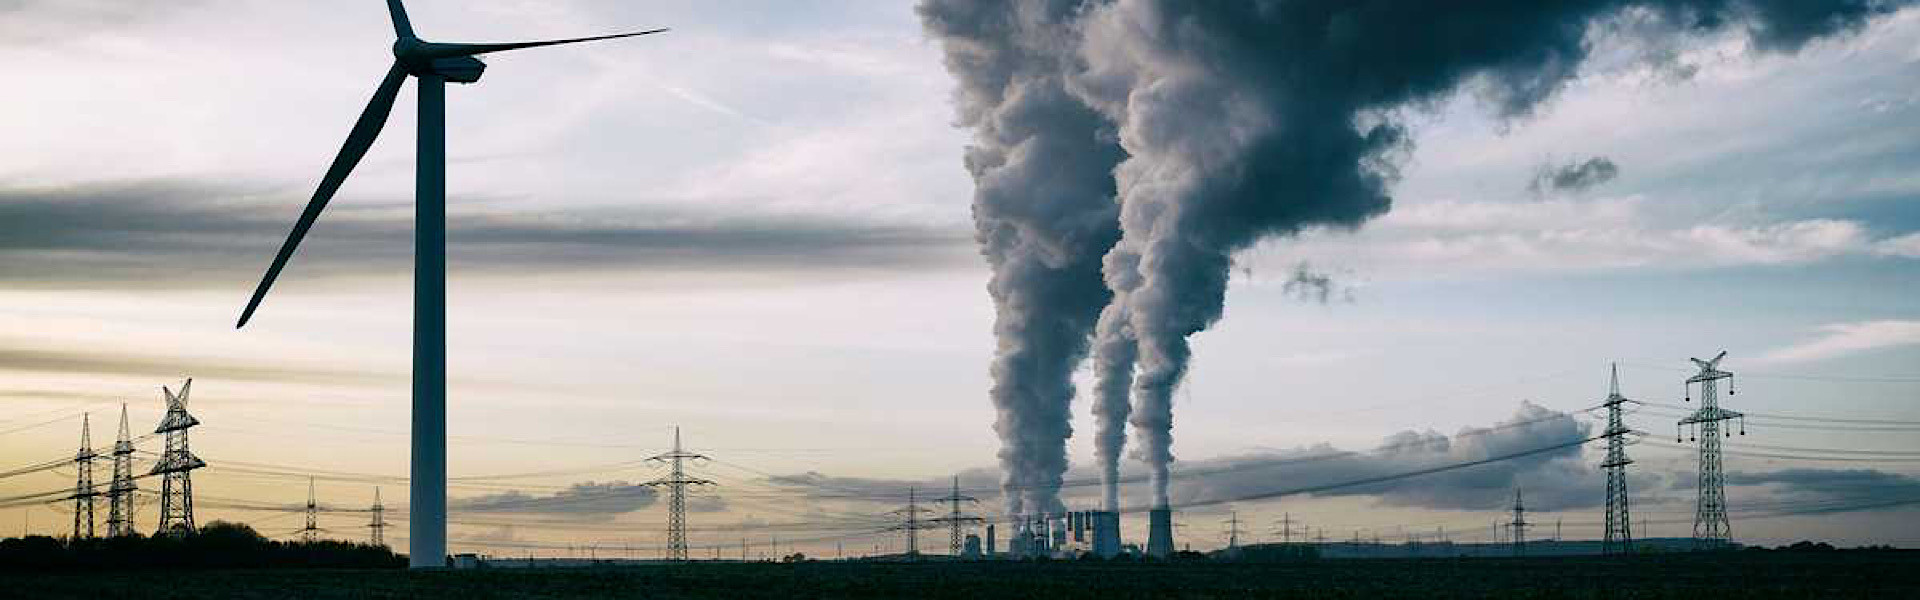 ONU: gases responsáveis pelo efeito estufa alcançam números sem precedentes